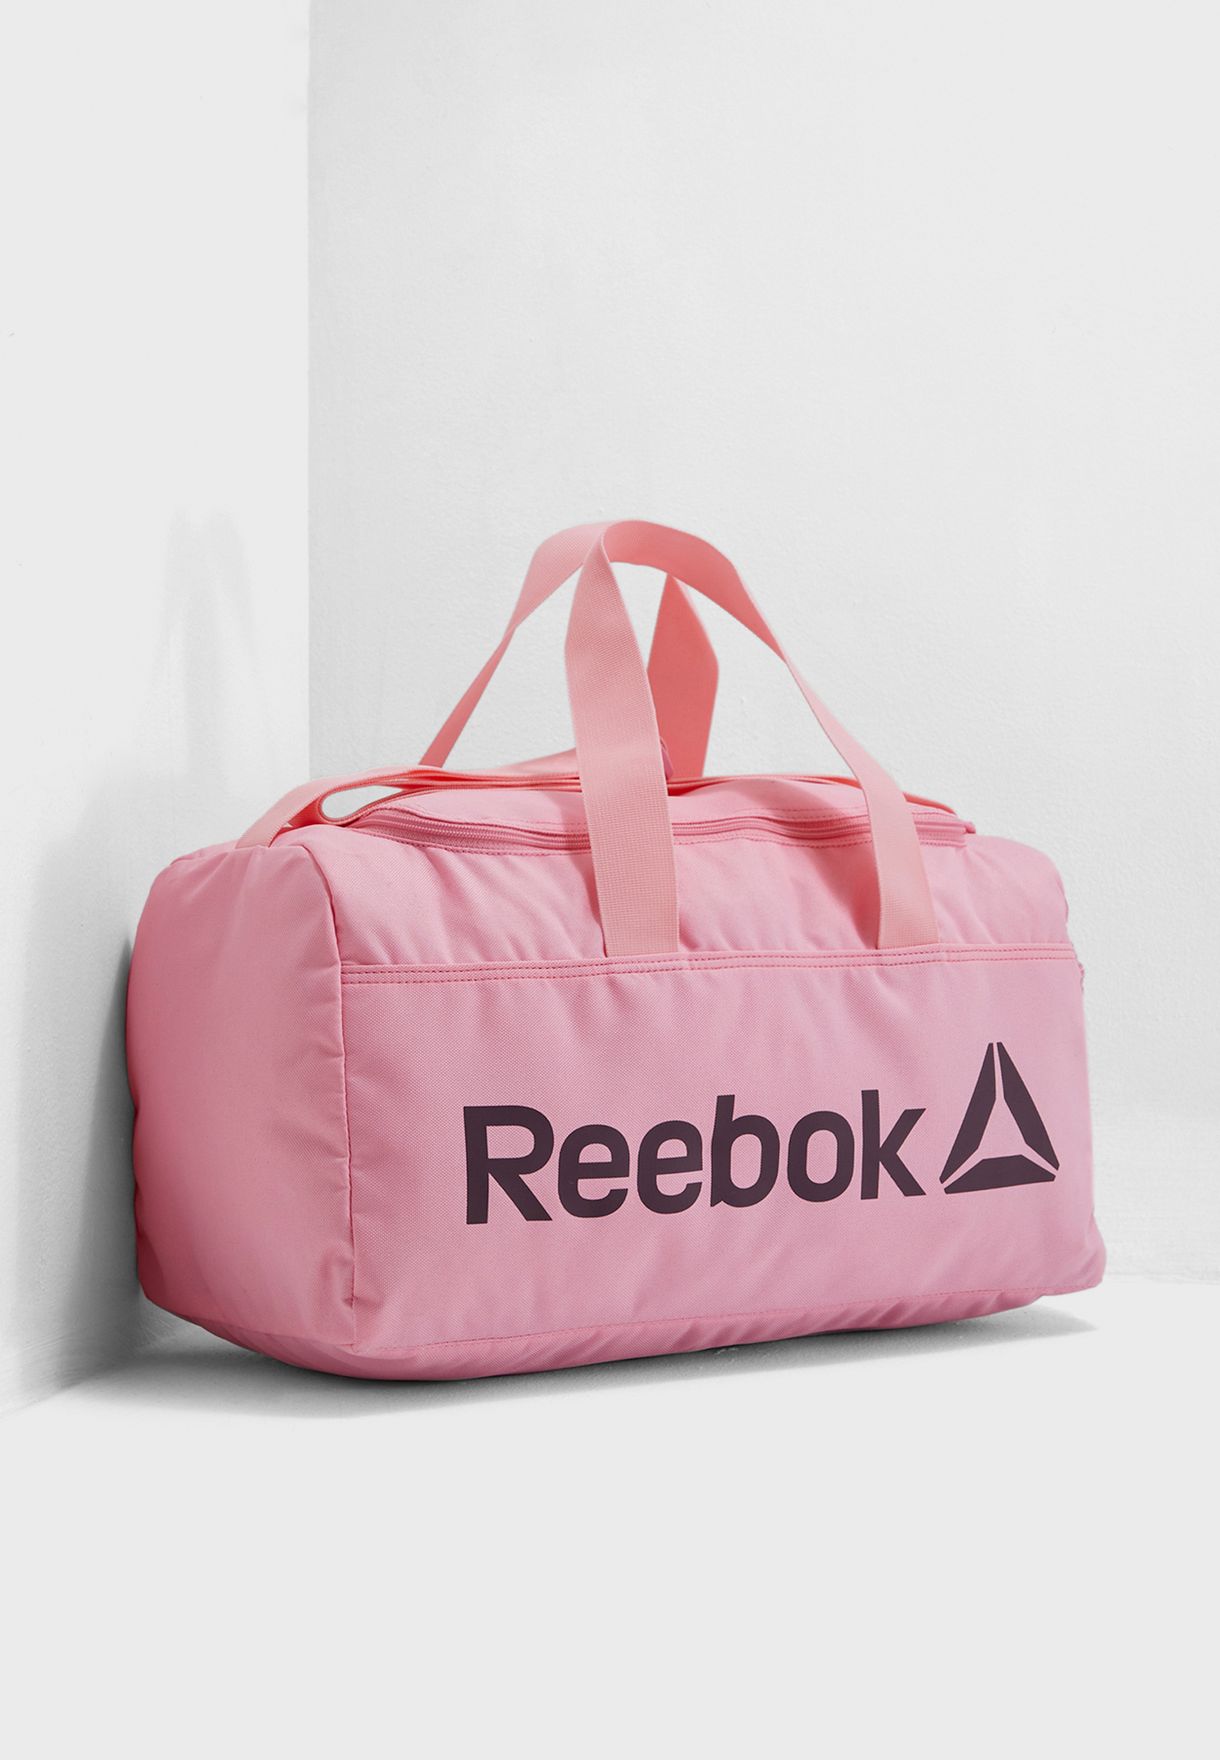 reebok pink bag